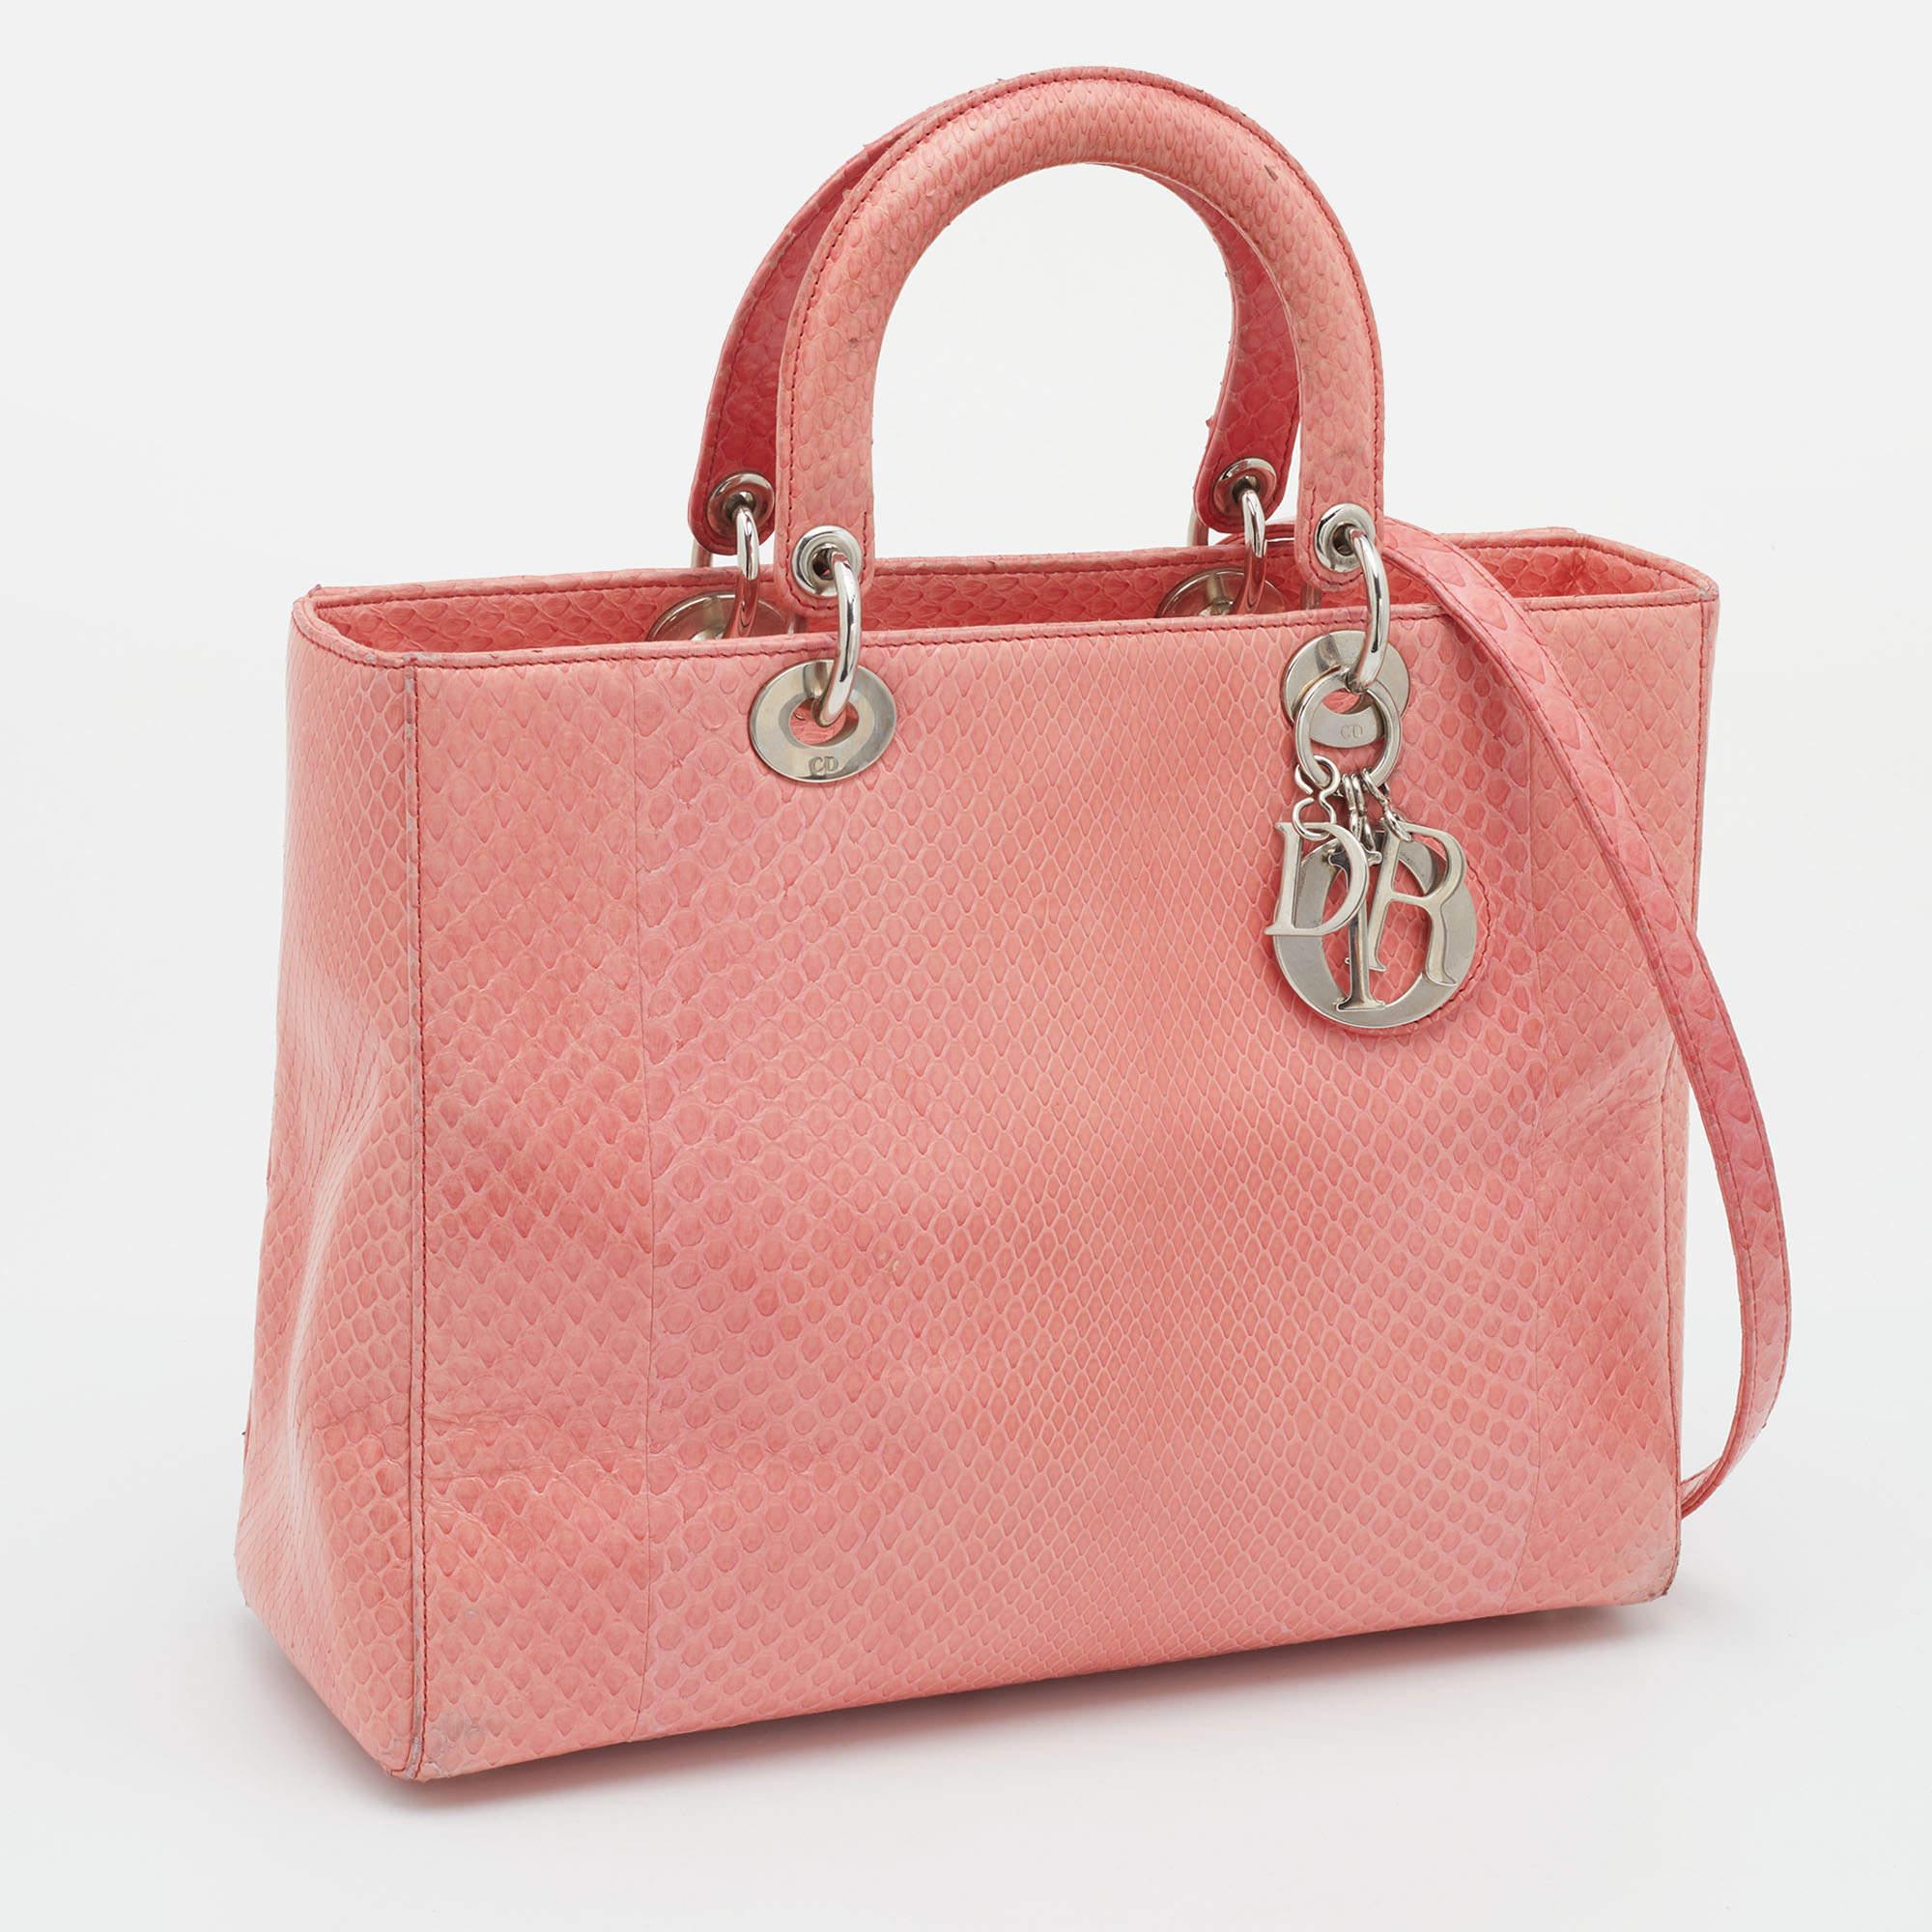 Ein zeitloser Status und ein großartiges Design kennzeichnen die Lady Dior-Tasche. Es ist eine ikonische Tasche, in die die Menschen bis heute investieren. Wir haben hier diese klassische Schönheit aus pfirsichfarbenem Pythonleder. Die Tasche hat